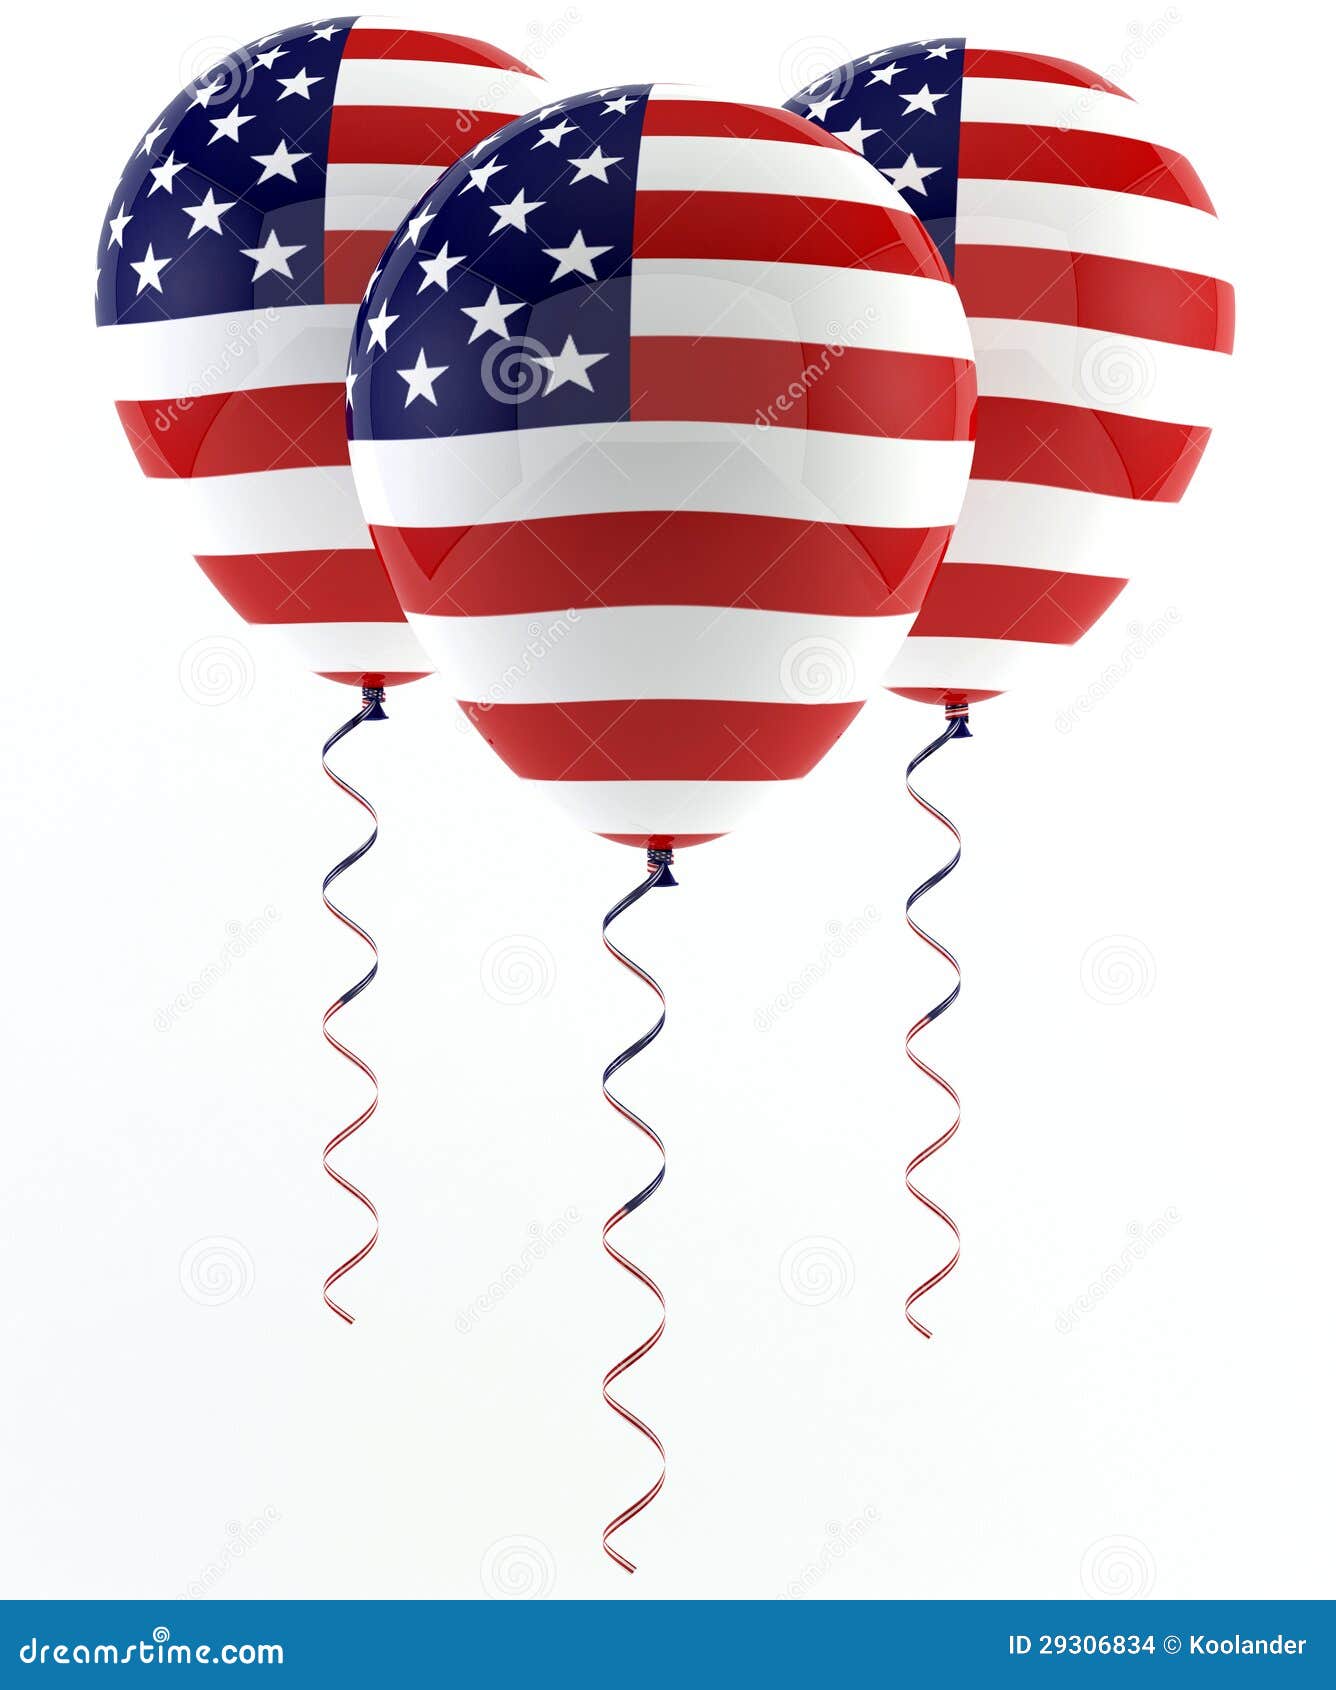 usa-balloons-flag-29306834.jpg